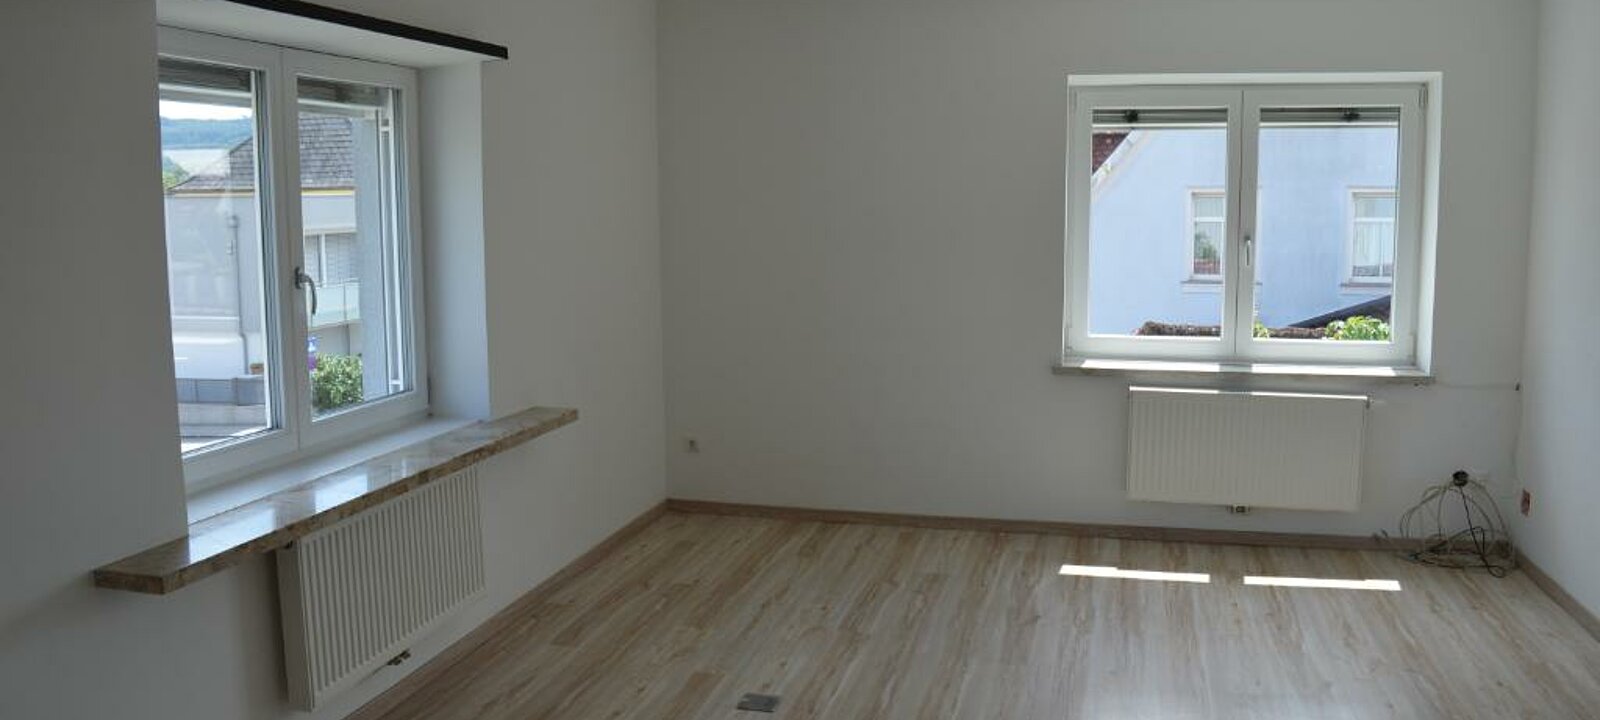 OG Büro inkl Küche 30,49m²